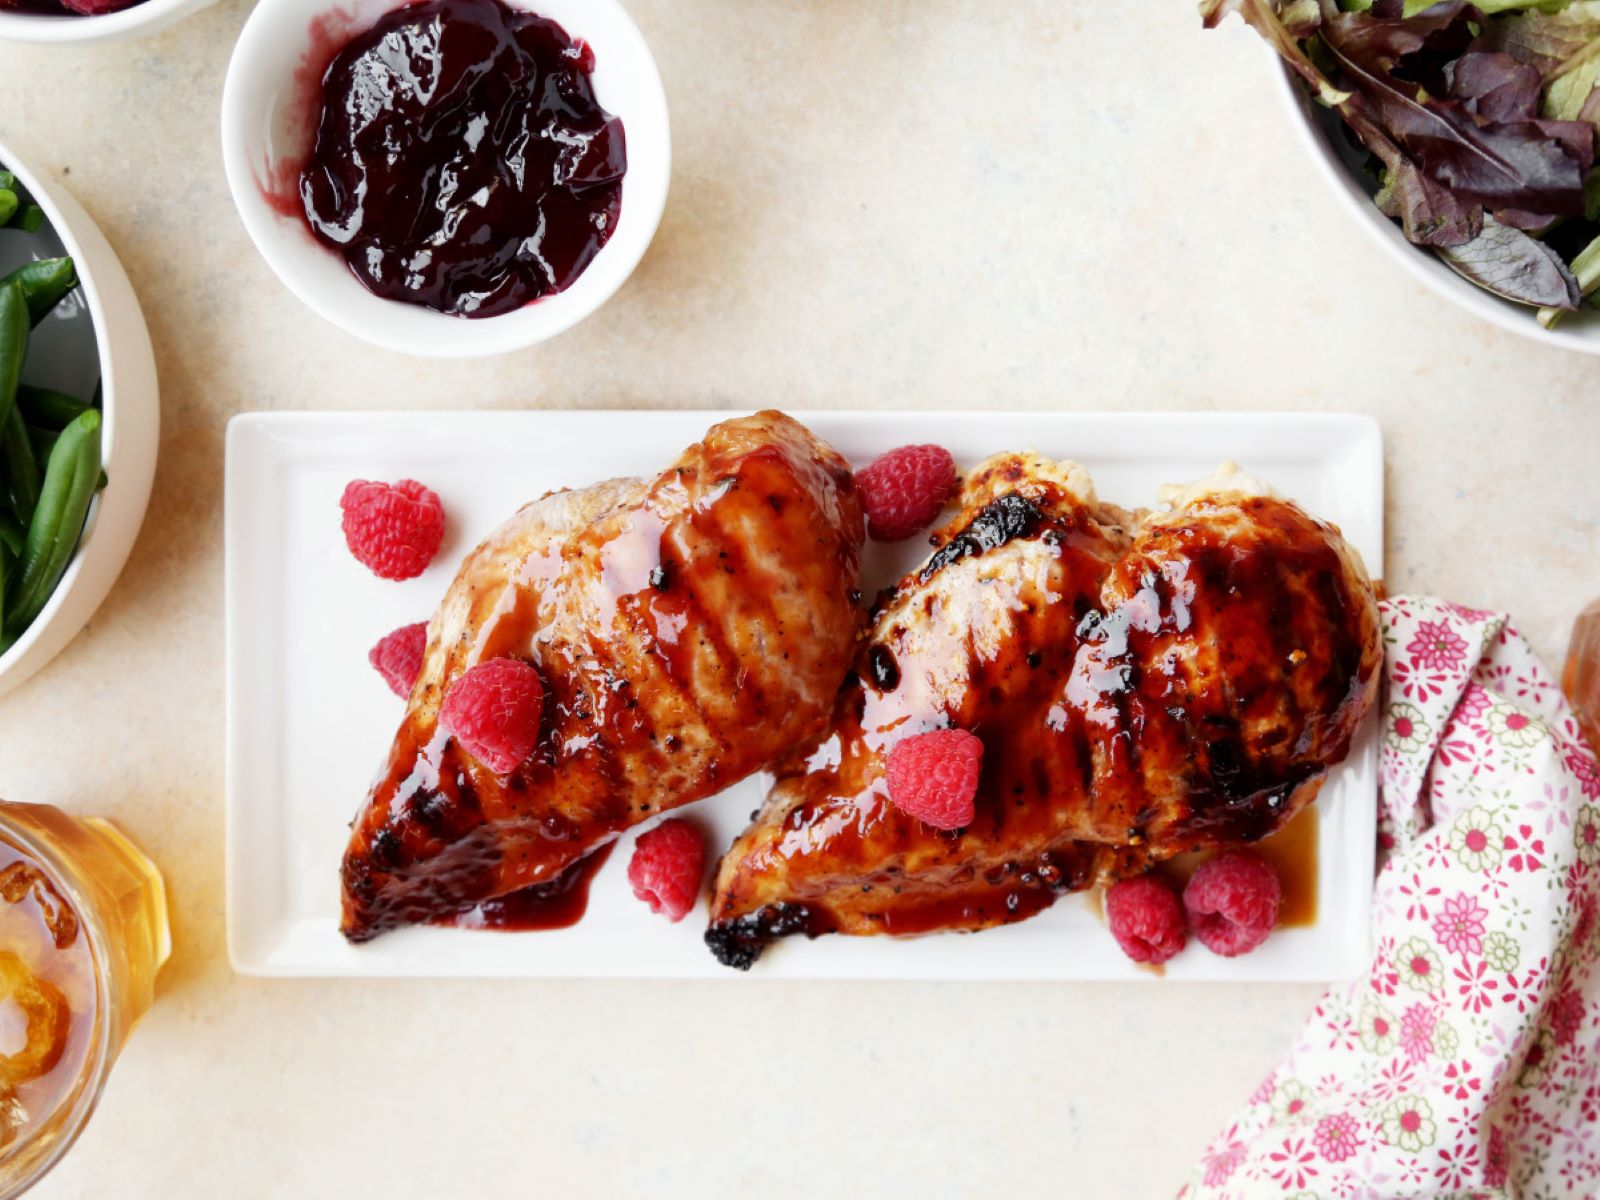 Braised Chicken With Raspberry Glaze